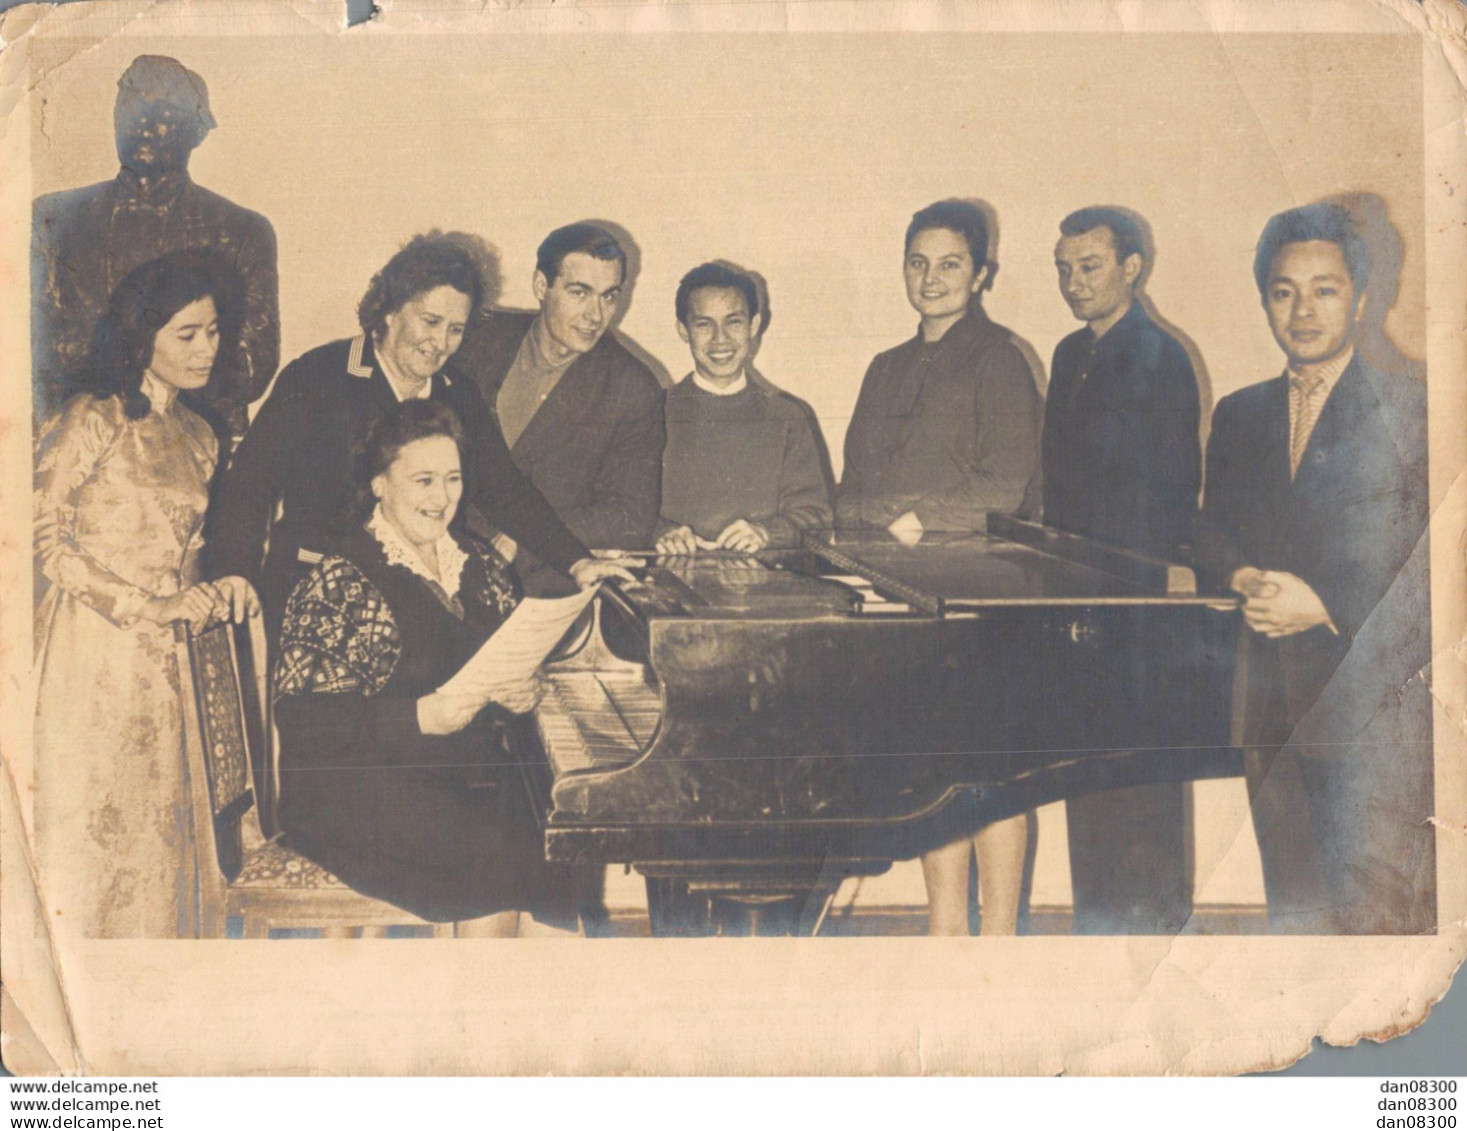 VIET NAM TONKIN INDOCHINE PHOTO 18 X 13 CMS GROUPE DE GENS AUTOUR D'UN PIANO ET D'UNE PIANISTE QUI RECOIT UNE PARTITION - Anonyme Personen